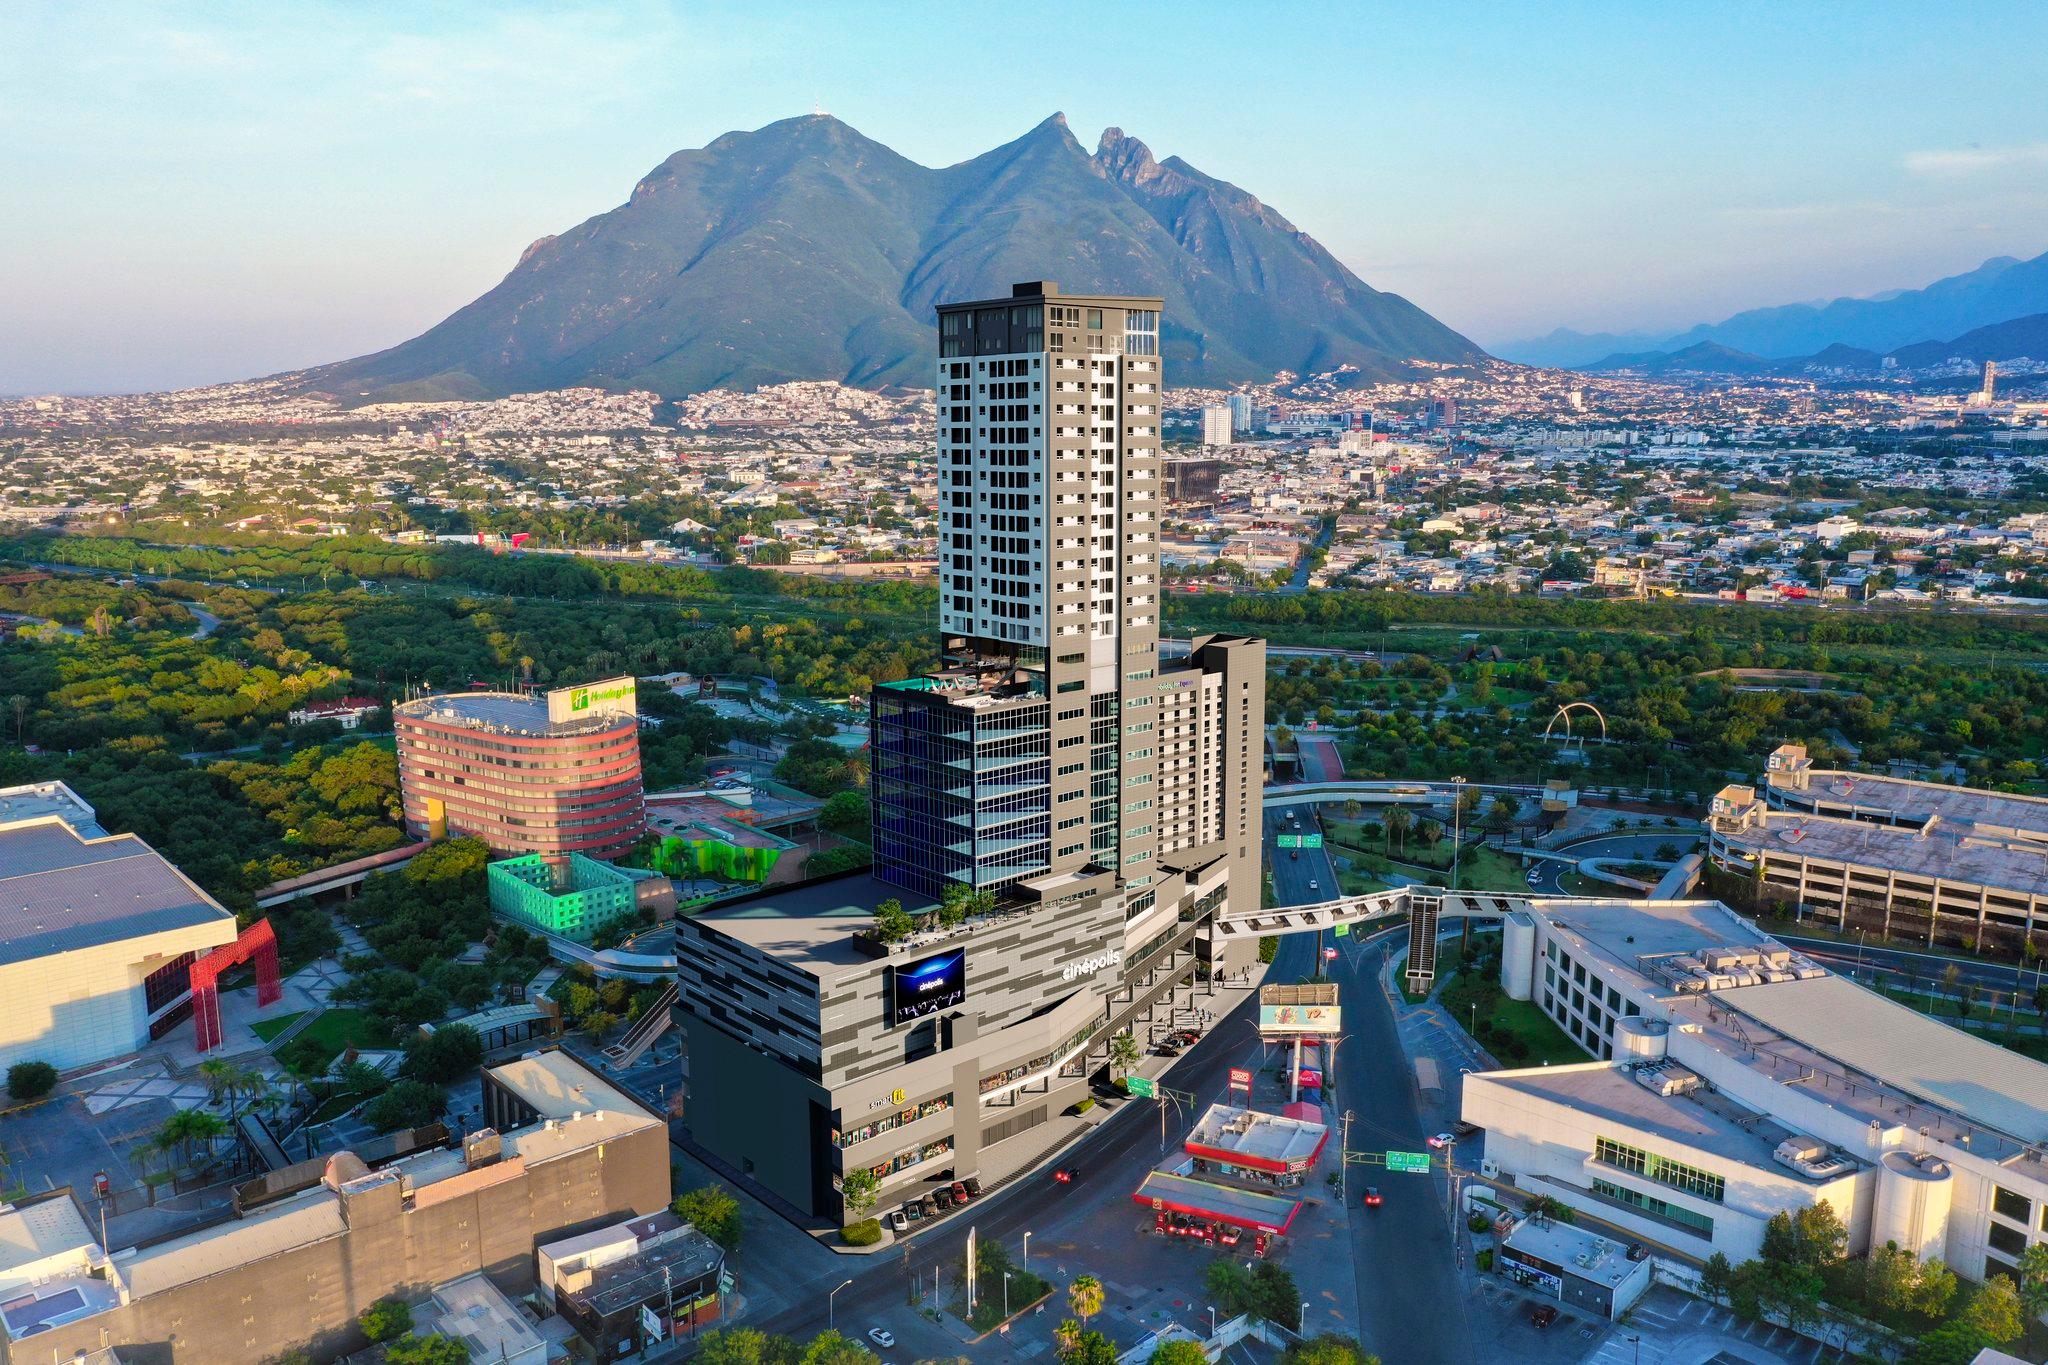 Holiday Inn Express Monterrey - Fundidora in Monterrey, MX